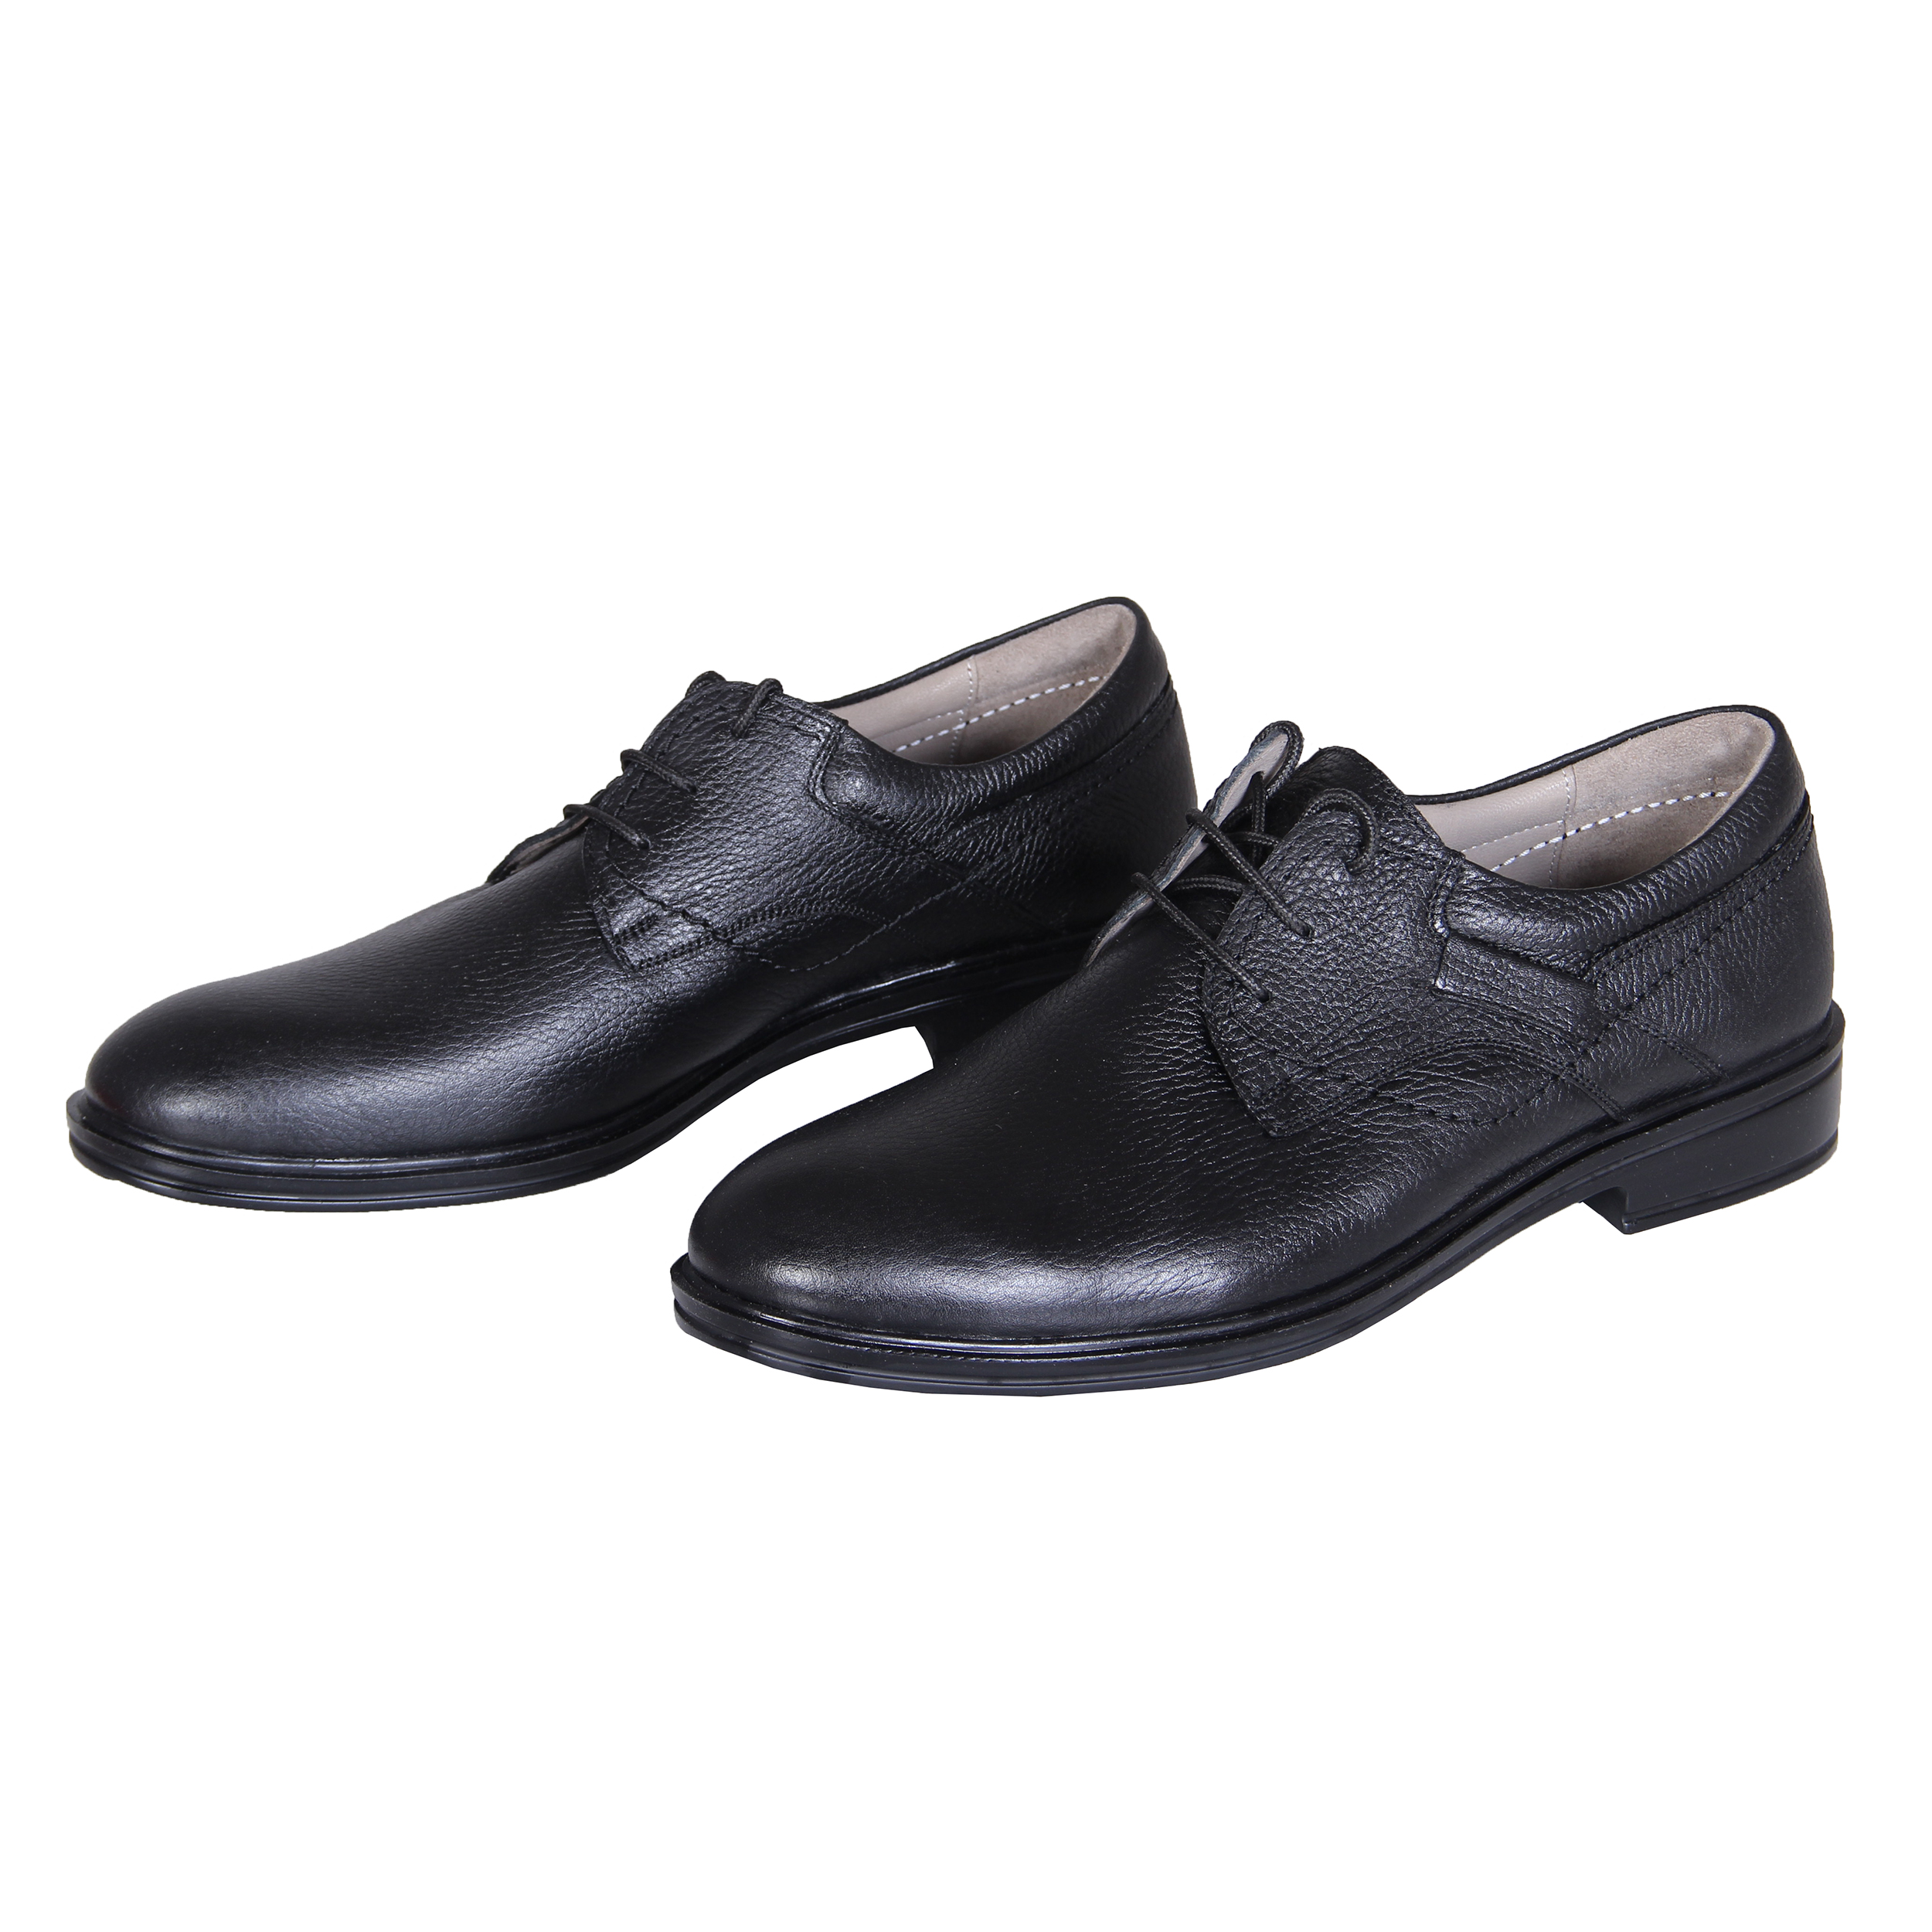 SHAHRECHARM leather men's shoes , F6028-1 Model